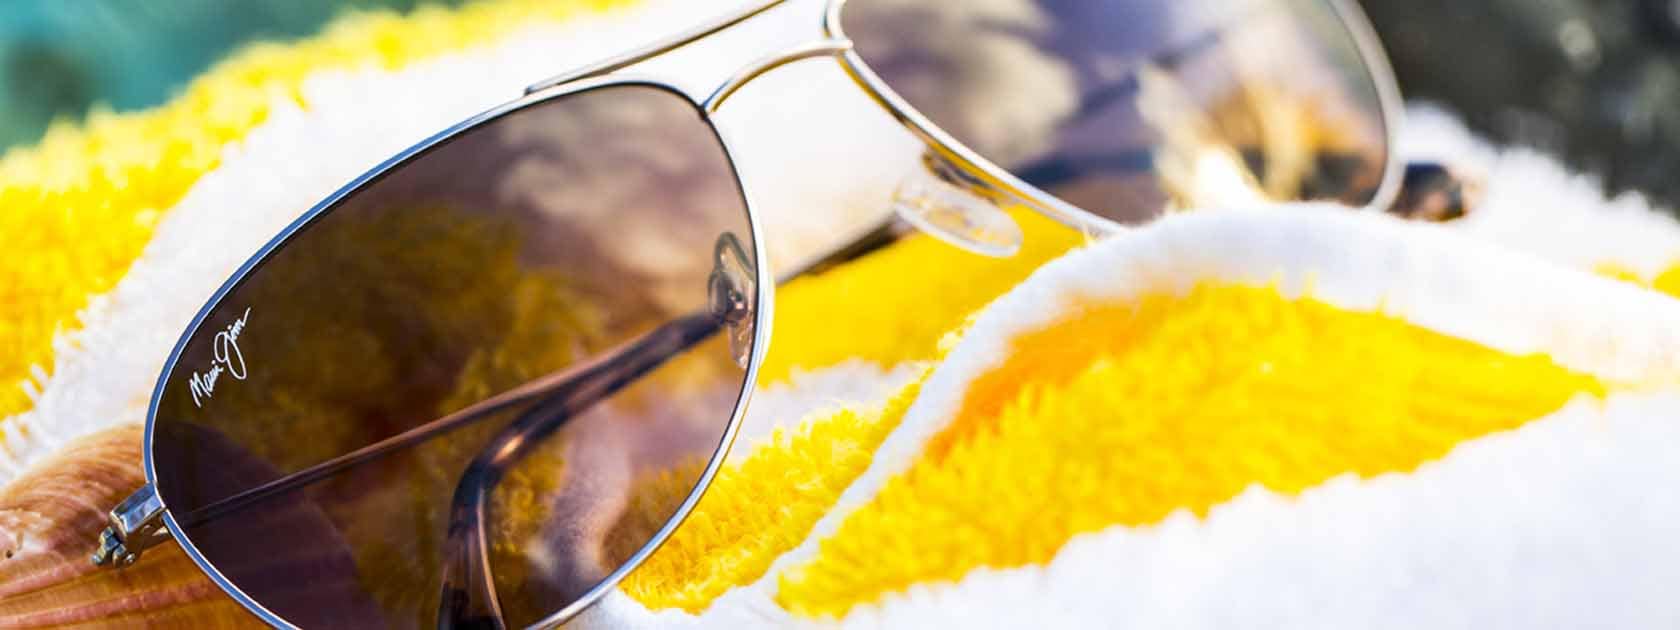 gafas de sol de aviador con montura plateada y lentes grises expuestas sobre toalla de rayas amarillas y blancas